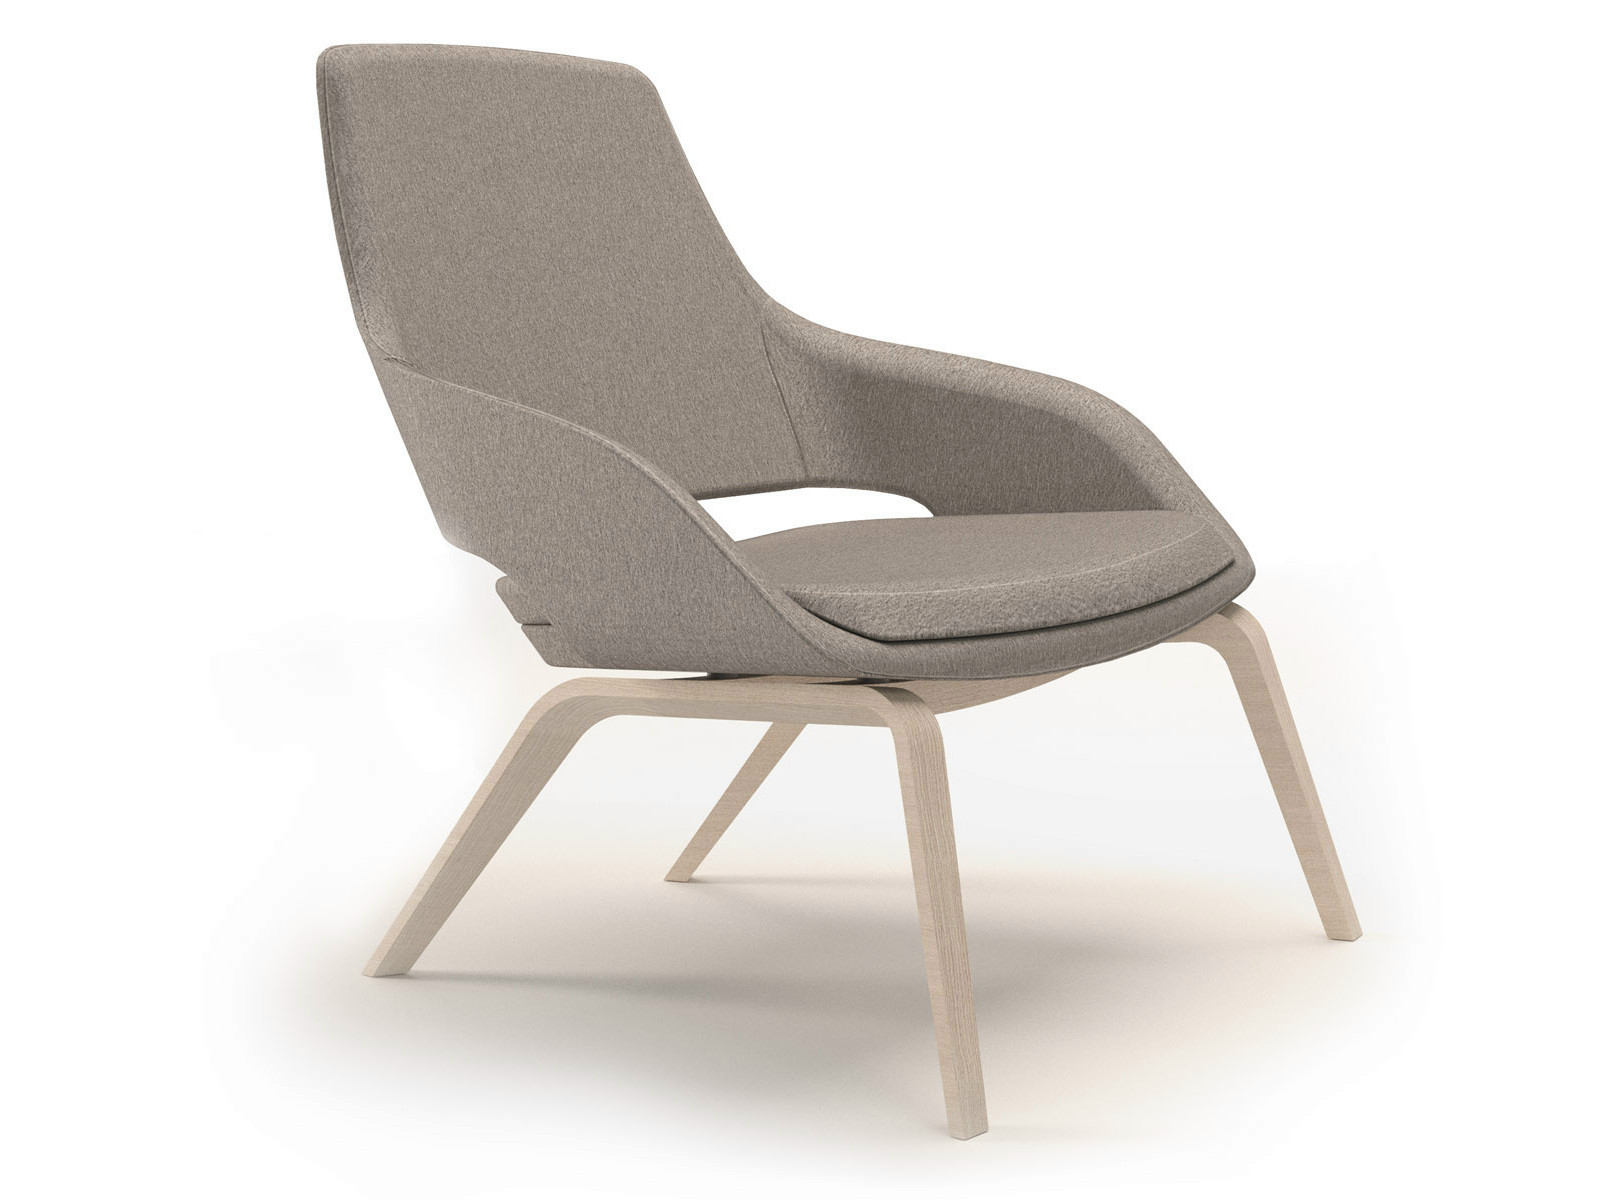 Lounge Sessel Guenstig
 lounge sessel günstig kaufen – Deutsche Dekor 2017